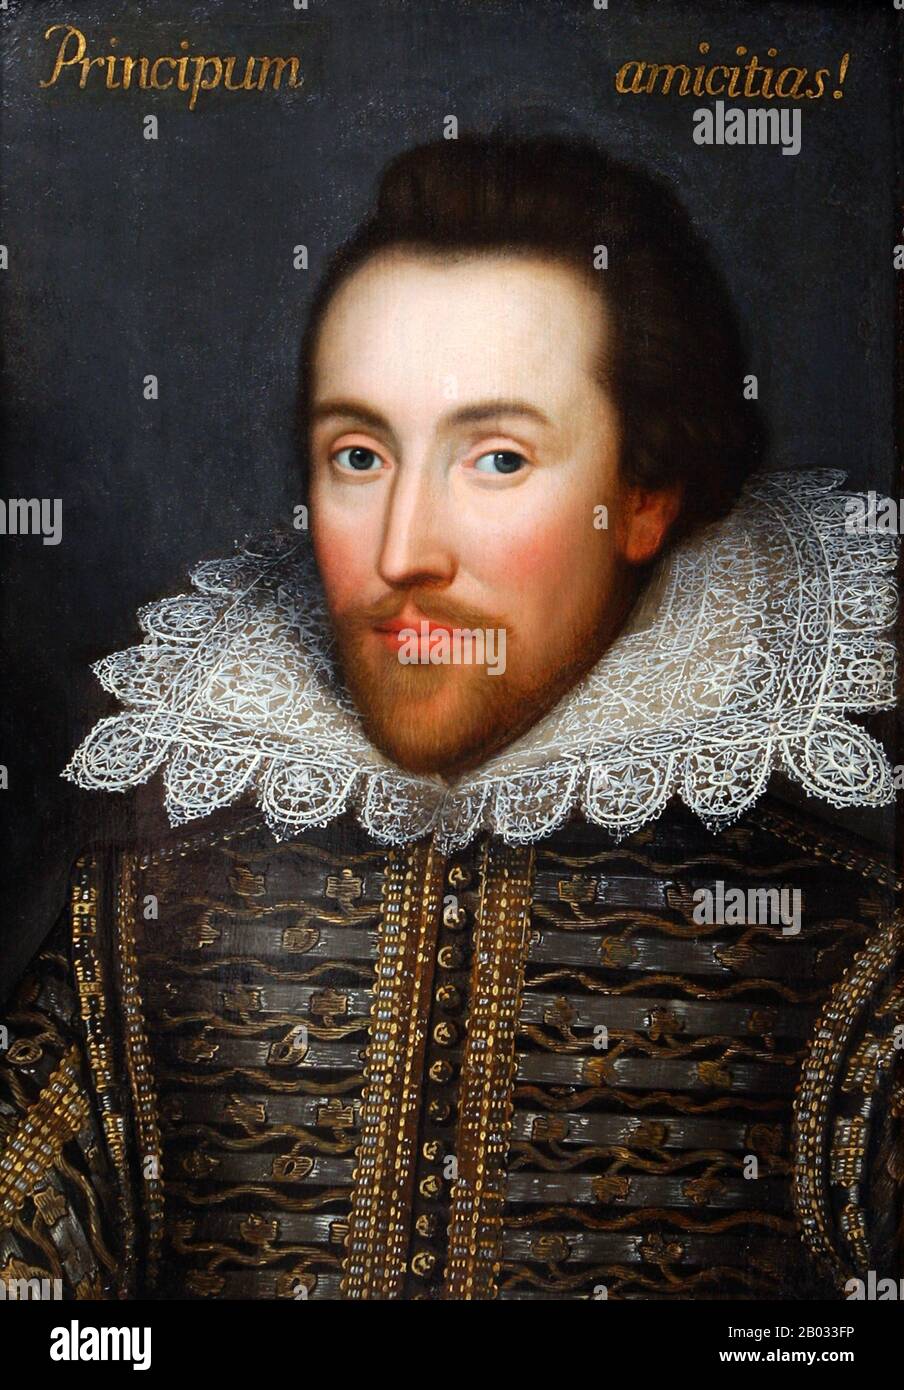 William Shakespeare (26 de abril de 1564 – 23 de abril de 1616) fue un  poeta, dramaturgo y actor inglés, ampliamente considerado como el mayor  escritor en lengua inglesa y el dramaturgo